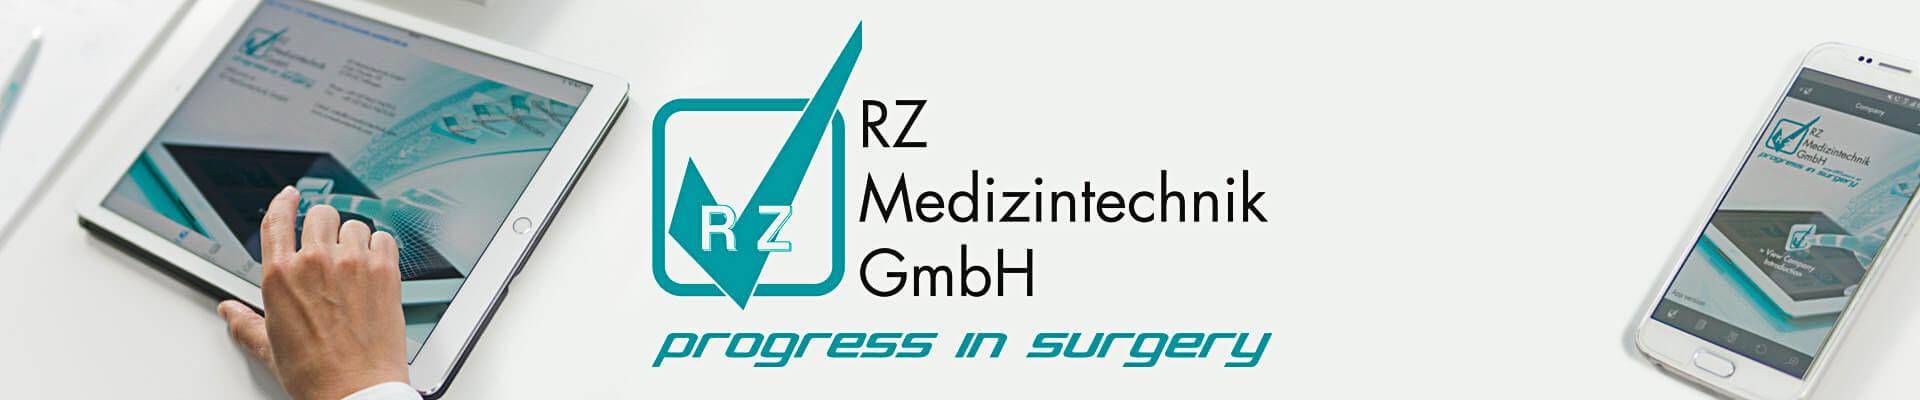 Banner RZ Medizintechnik